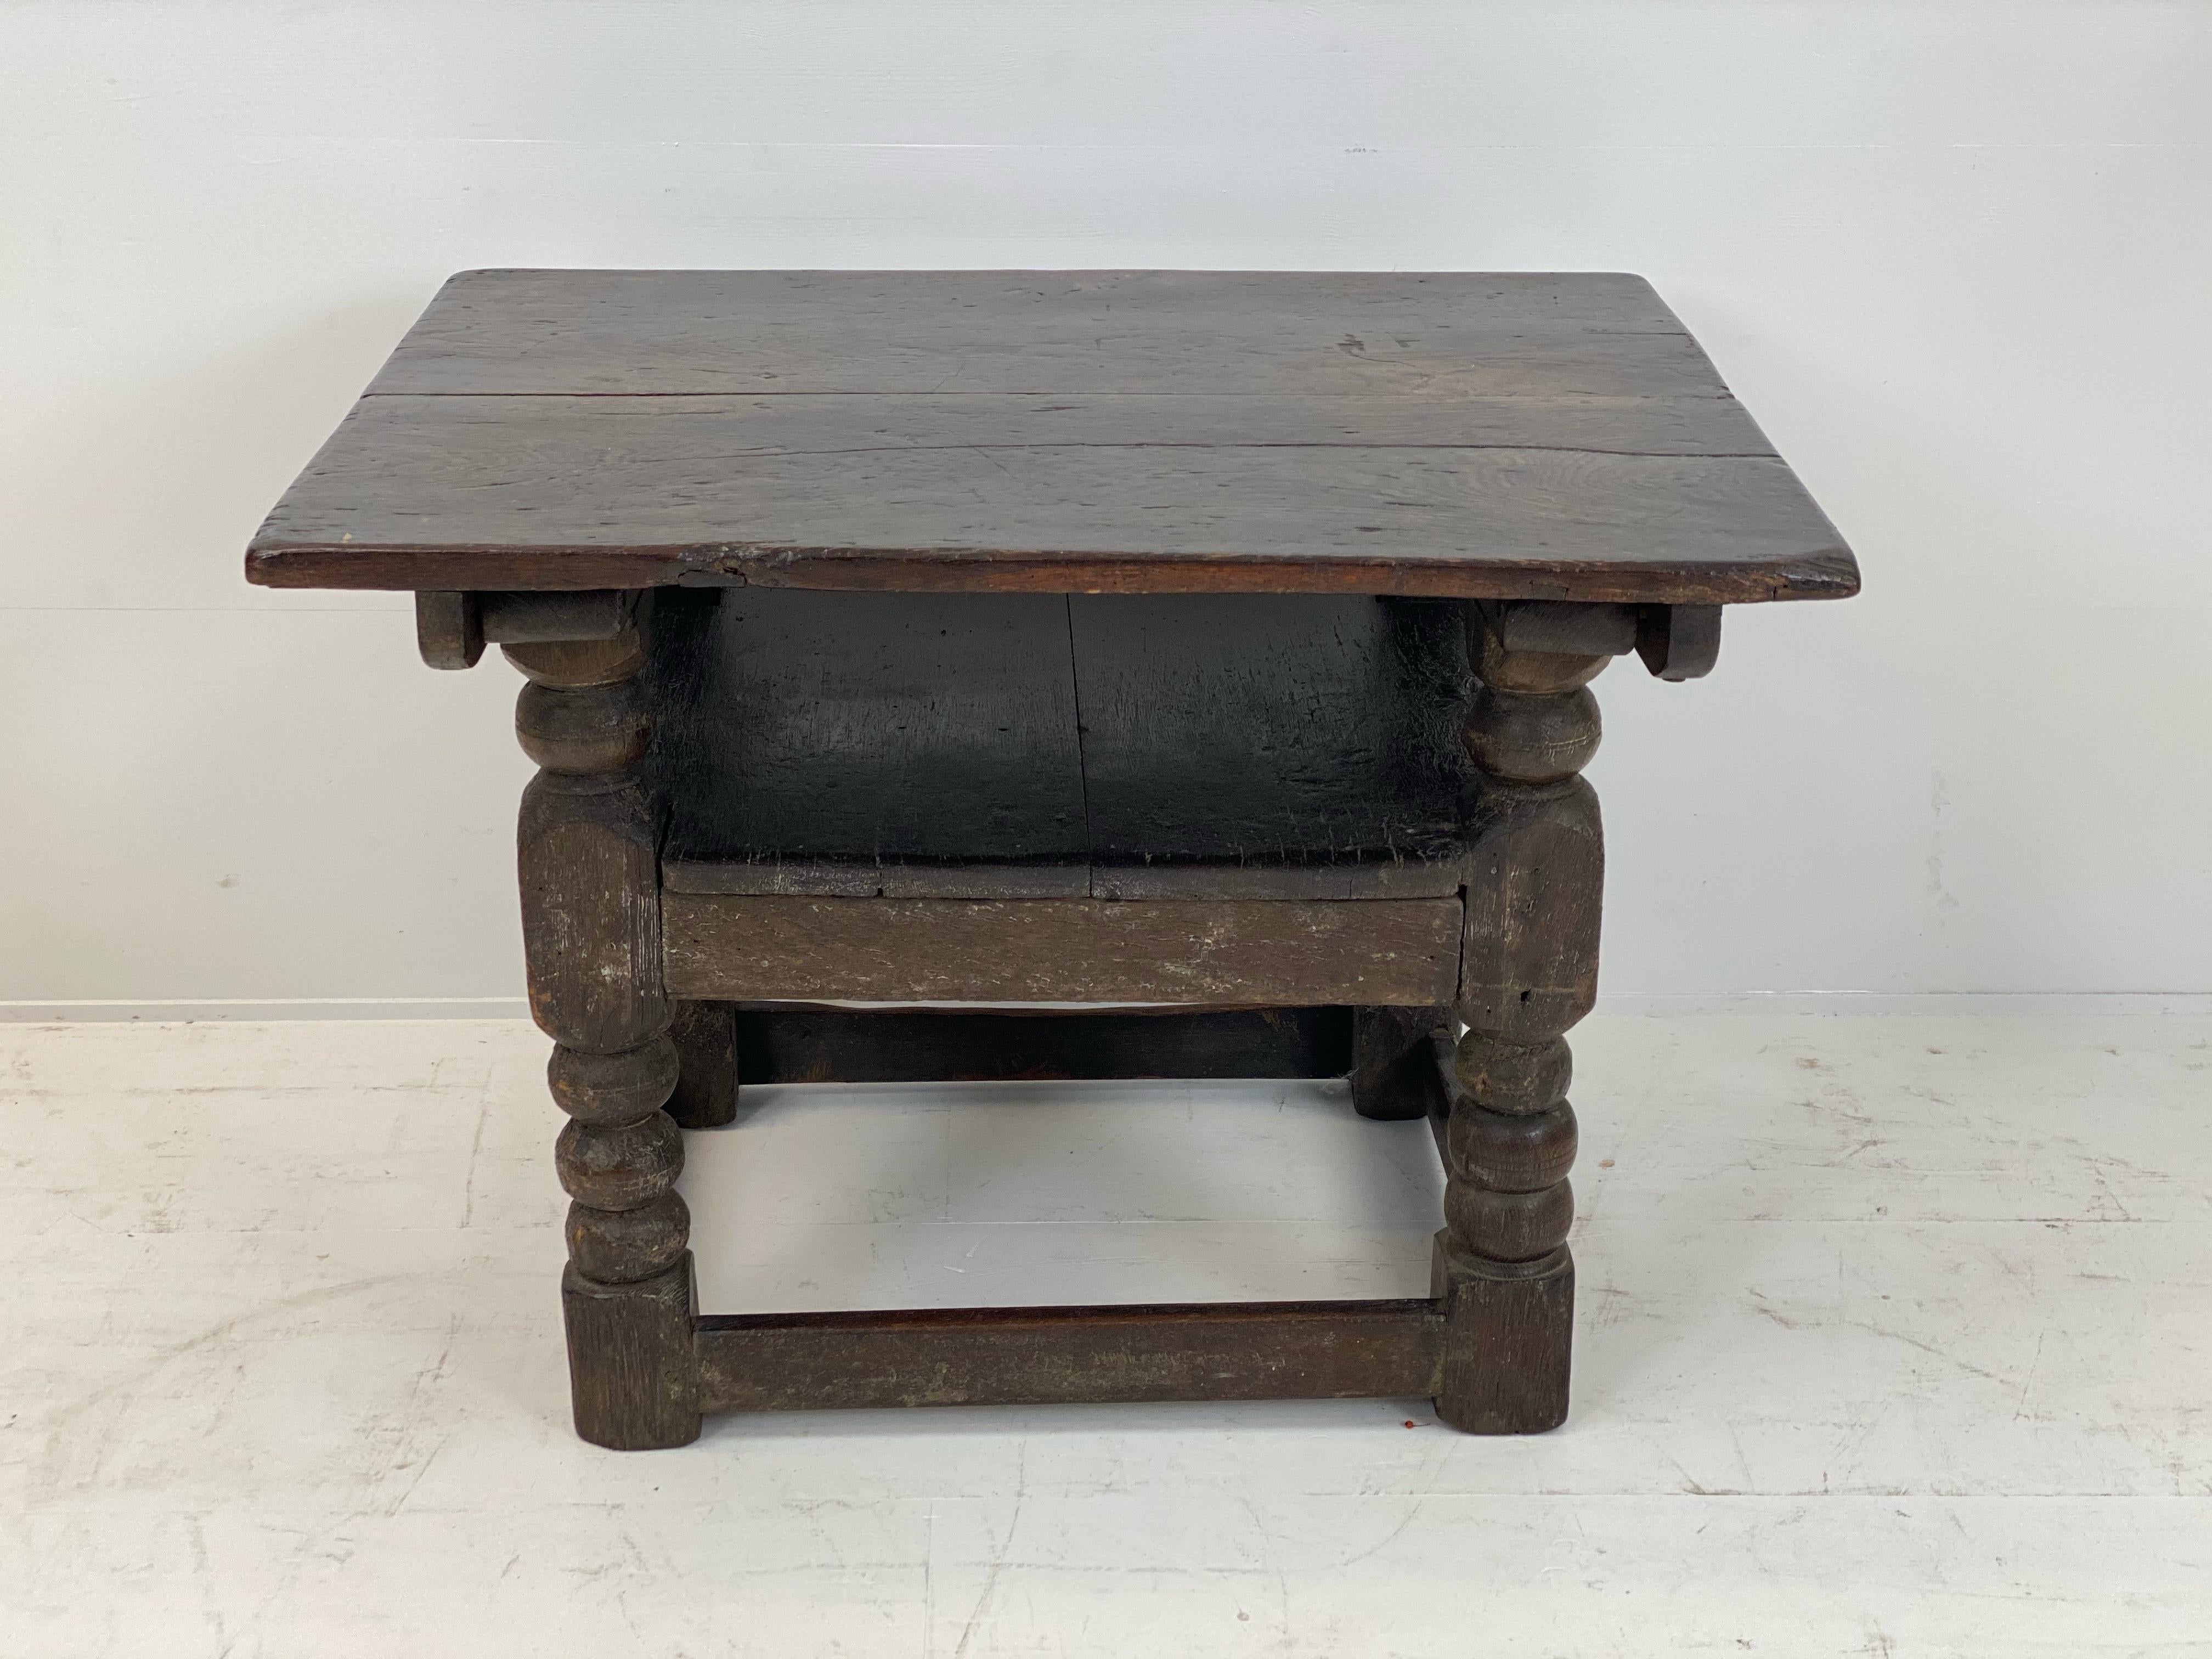 Superbe antike englische Eiche Refectory Tisch,
in einen Stuhl umbaubar,
Wunderbare Patina, warmes und abgenutztes Finish, ein Möbelstück mit großem Charakter,
anfang des 18. Jahrhunderts,
dunkel braun getöntes Holz, ein Tisch voller Charme und